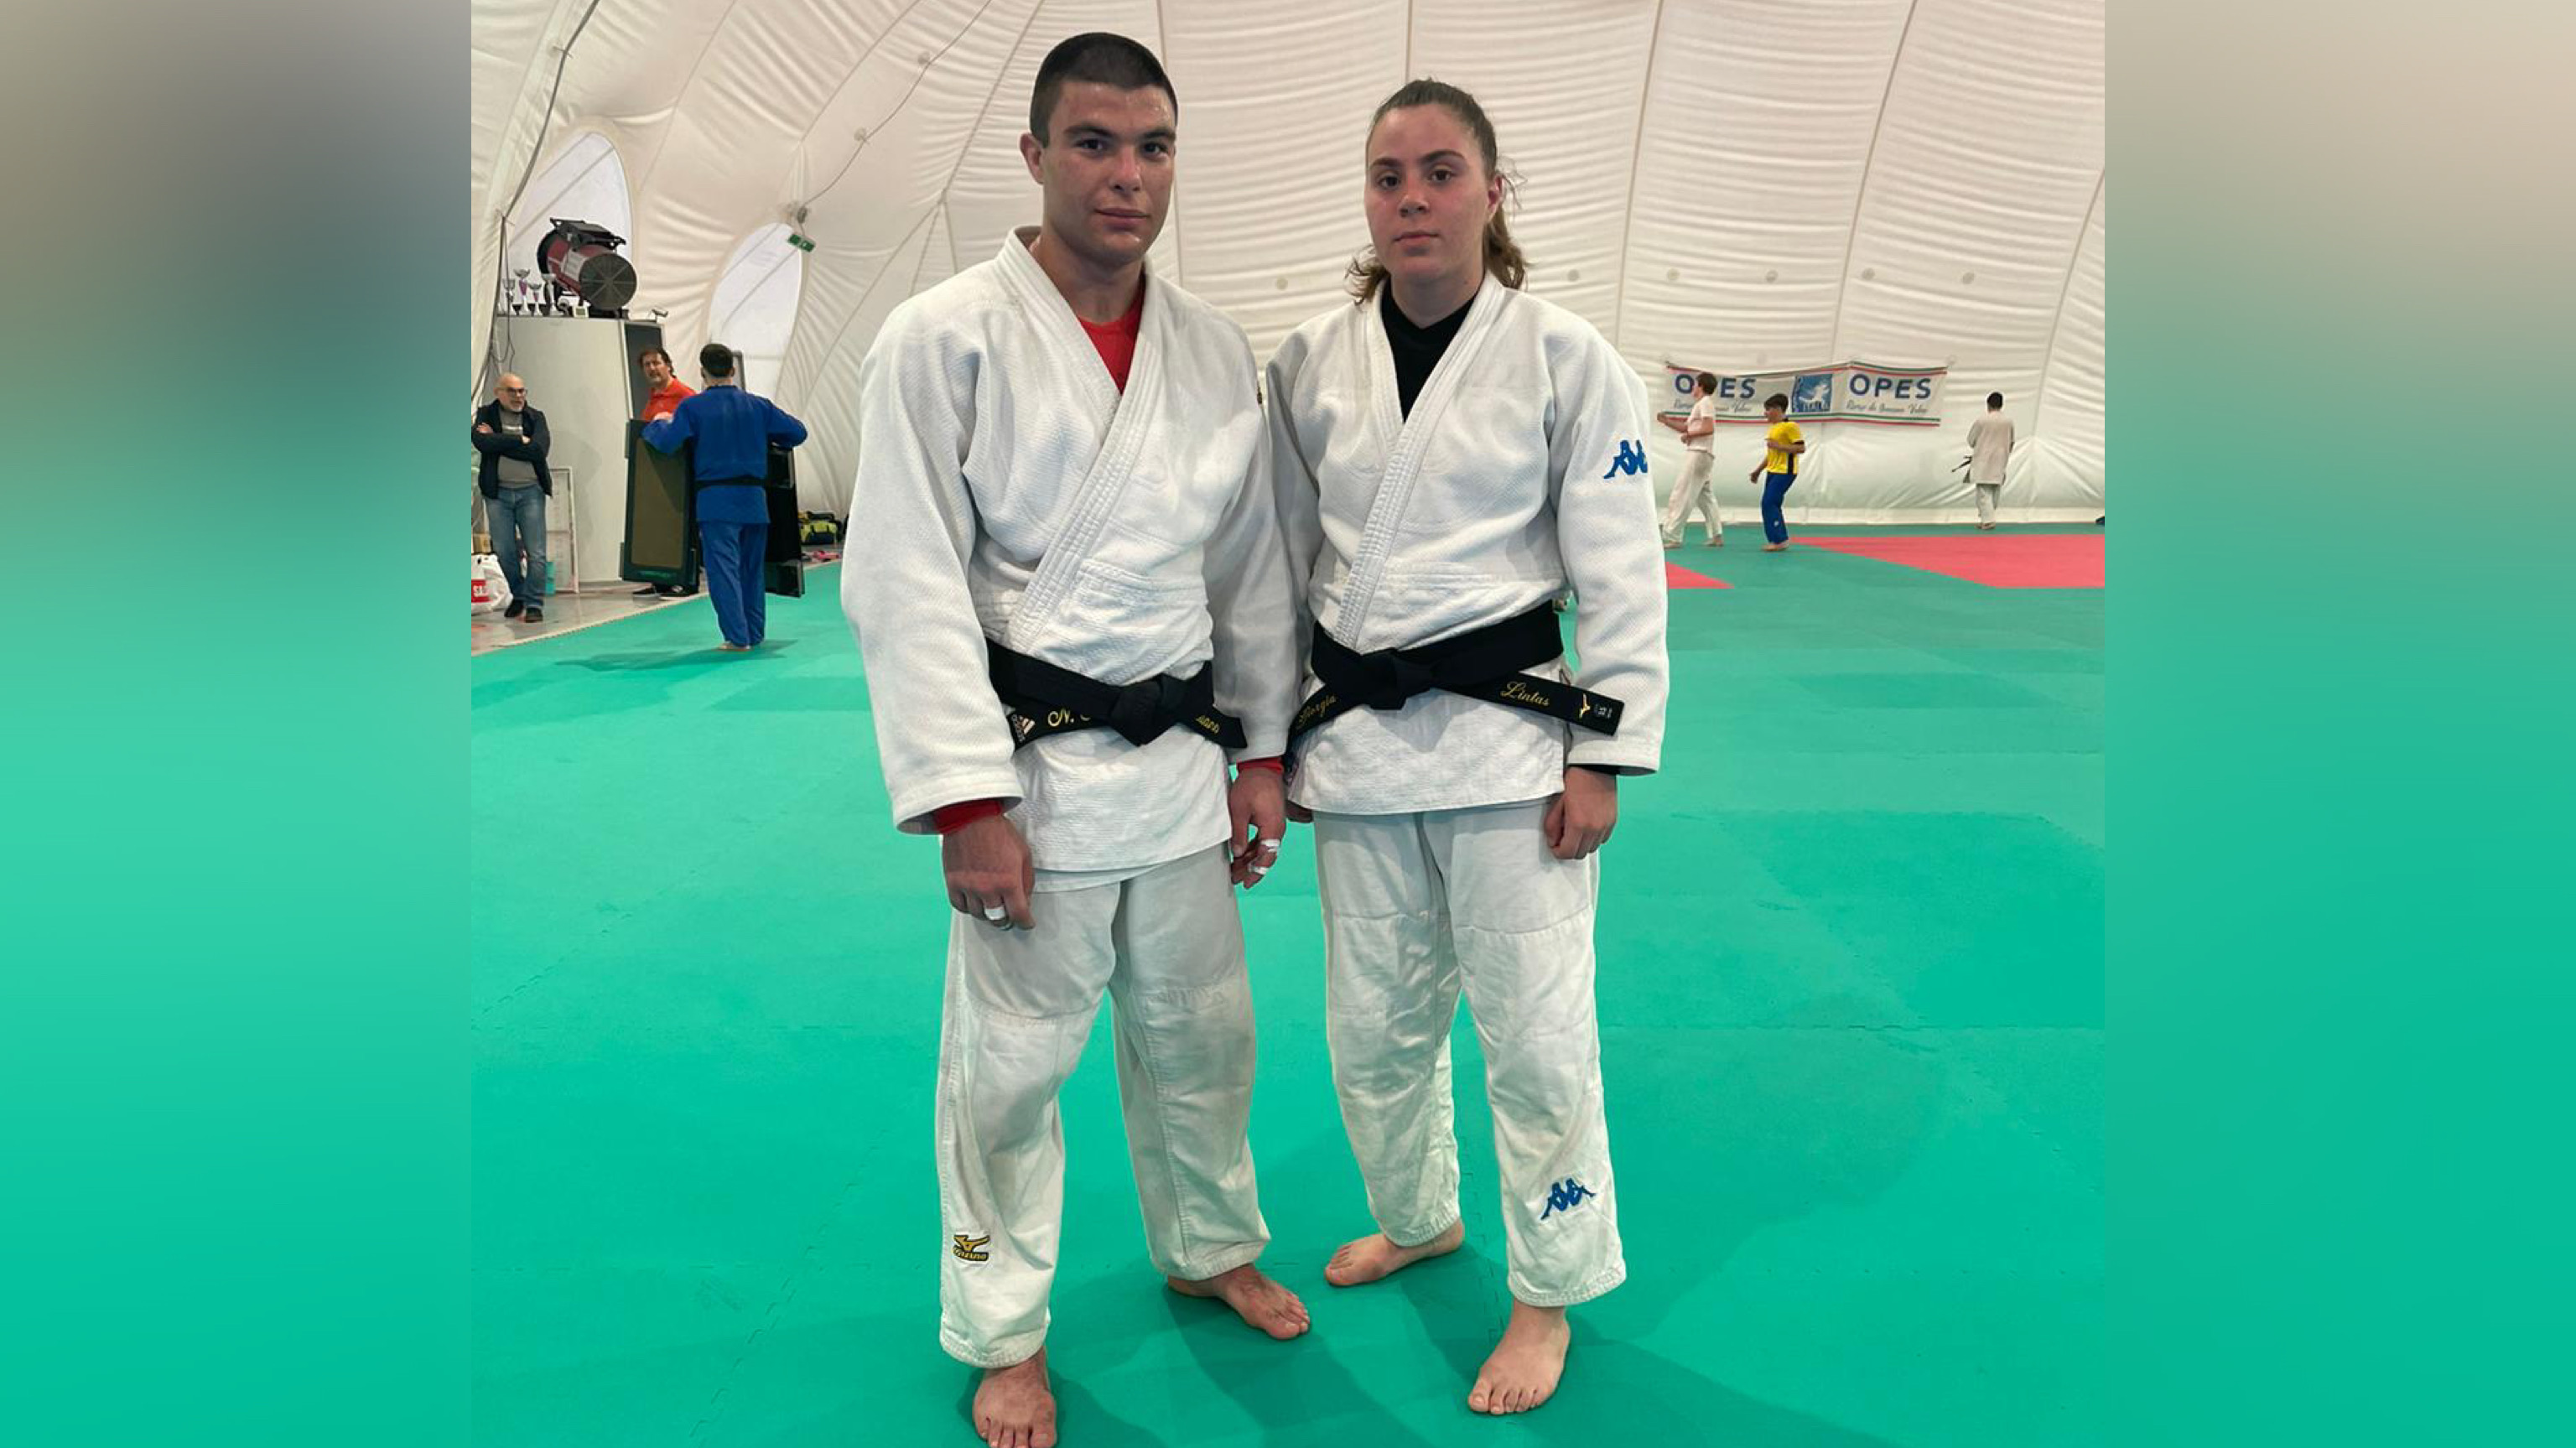 Centro Sportivo Olbia, si coltivano eccellenze nel mondo judo: le parole del maestro Mele